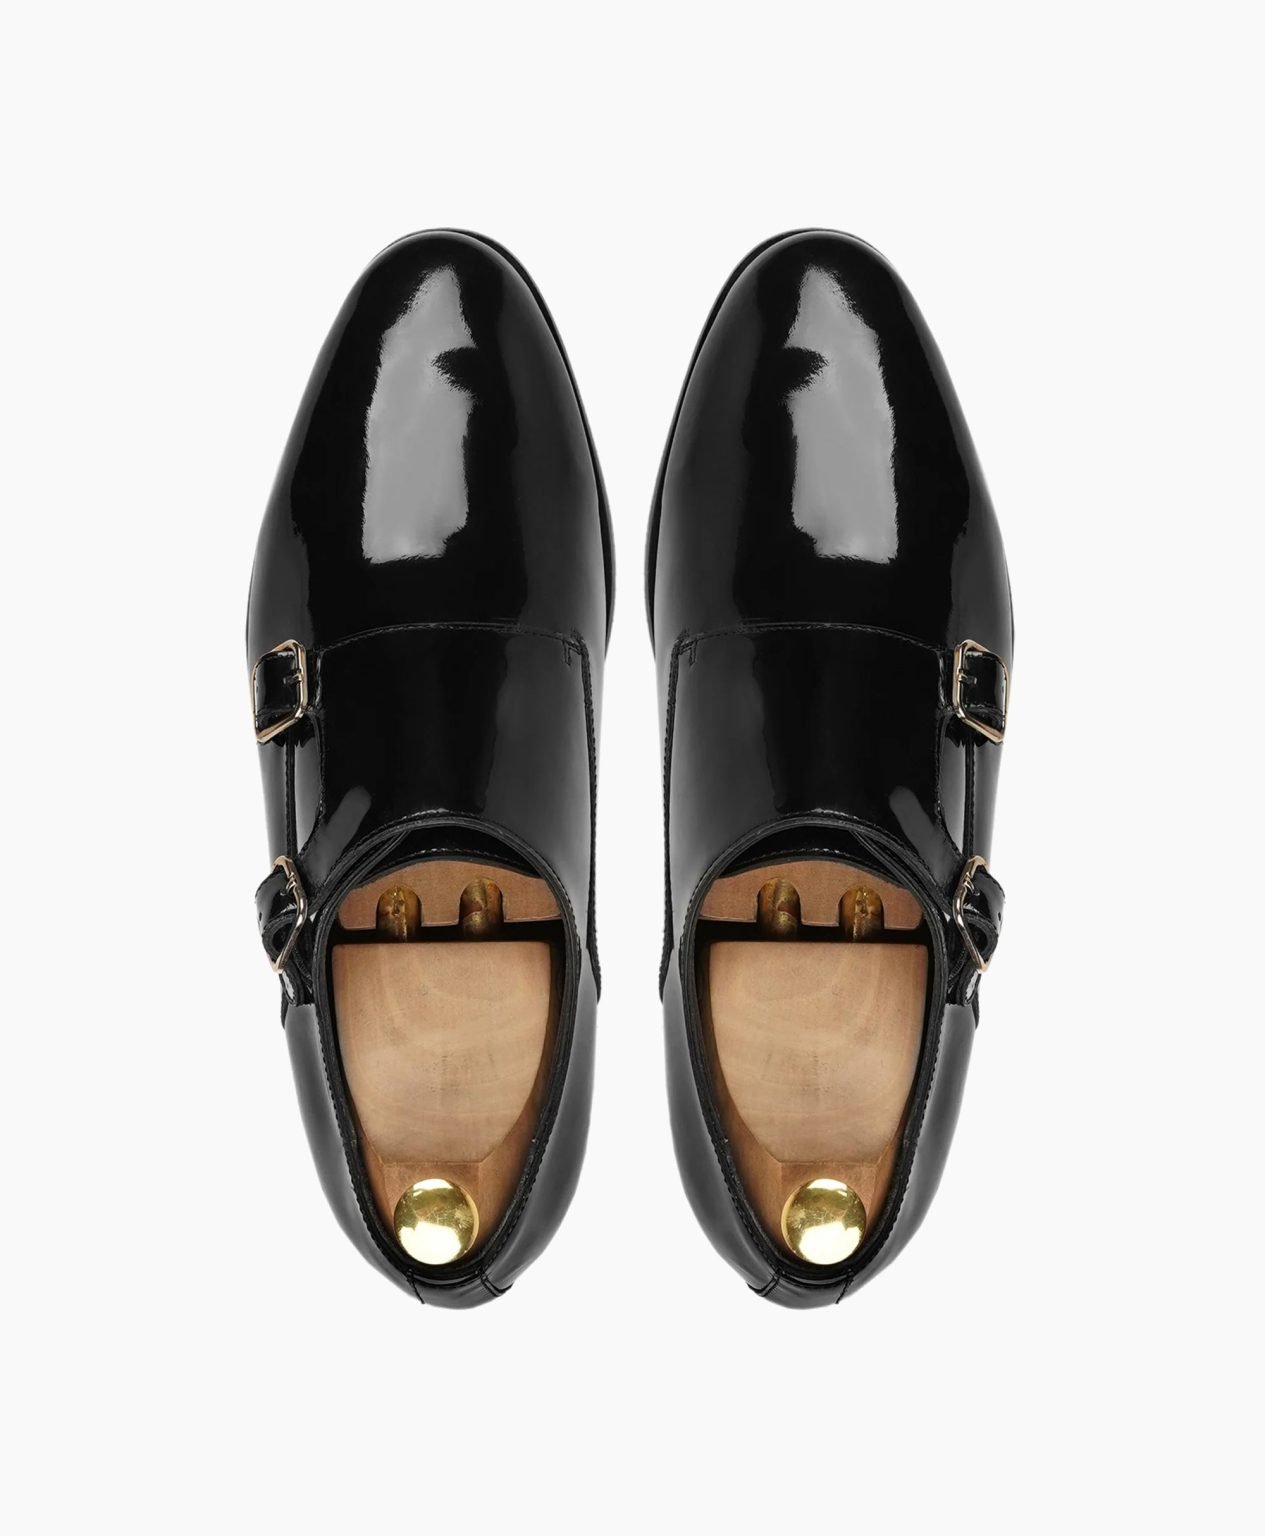 torridge-double-monkstrap-black-leather-shoes-image202